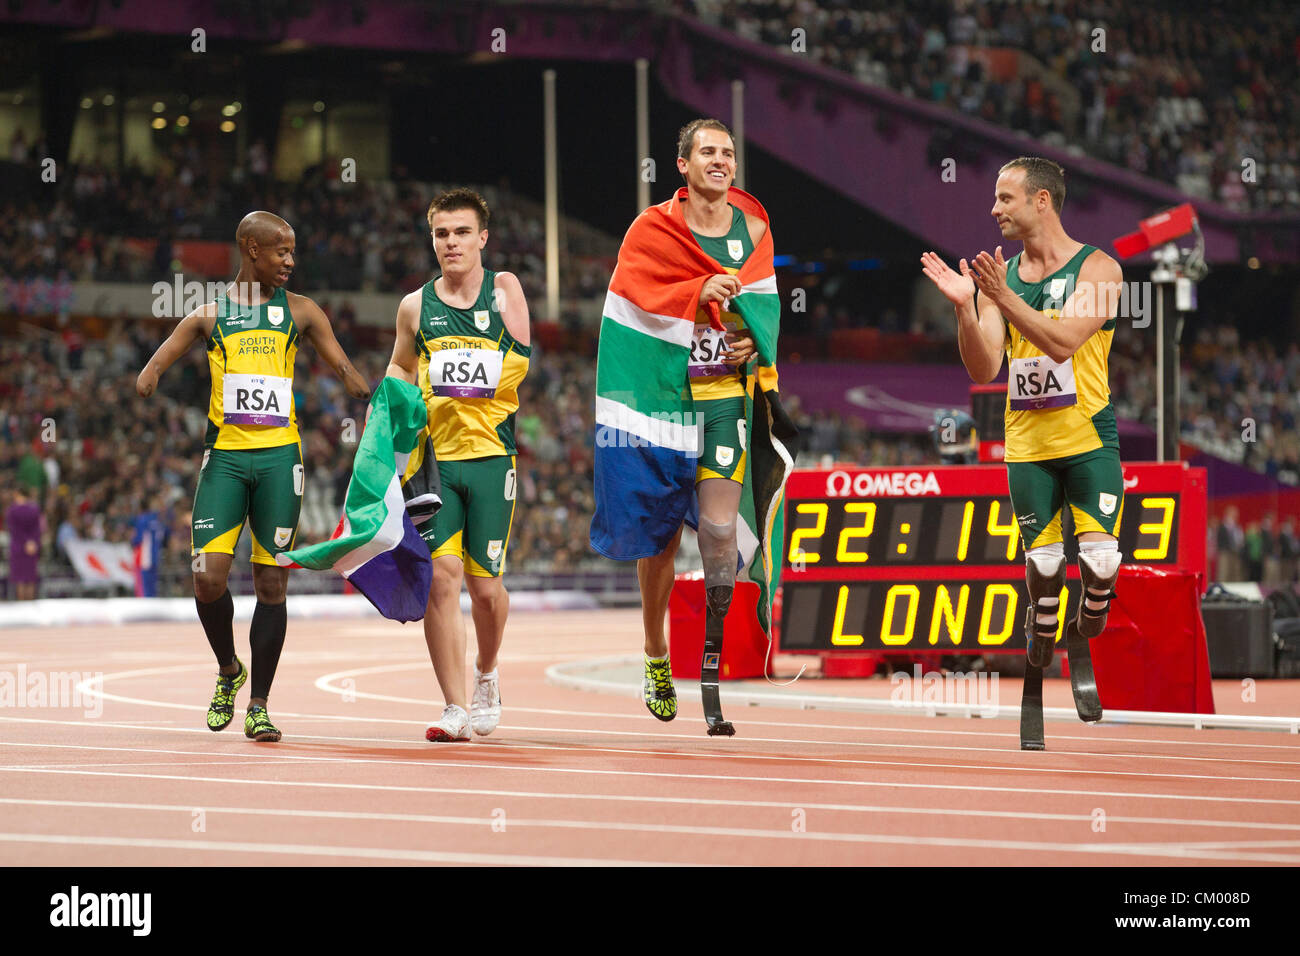 Les hommes de l'Afrique du sud du 4x100 mètres relais T42-44 fête son record du monde et médaille d'or aux Jeux Paralympiques de Londres. Banque D'Images